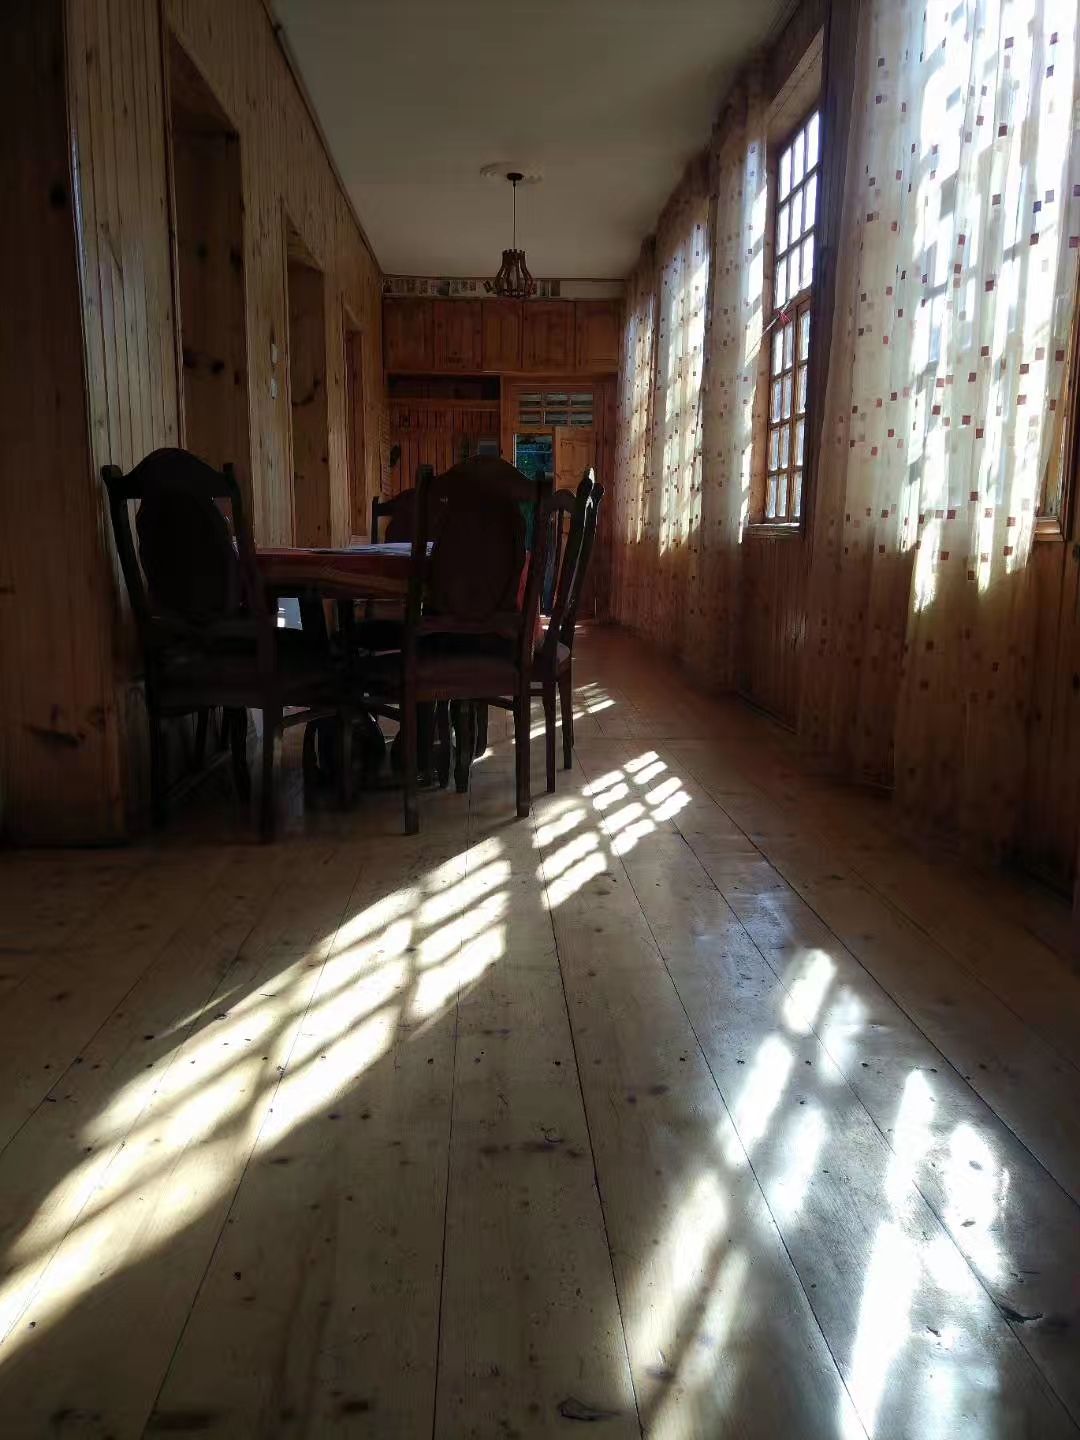 #格鲁吉亚.库塔伊西#对着冰河的梅斯蒂亚庄园旅馆有一排老旧的走廊，躺在厚重的沙发上。便可以看着阳光慢